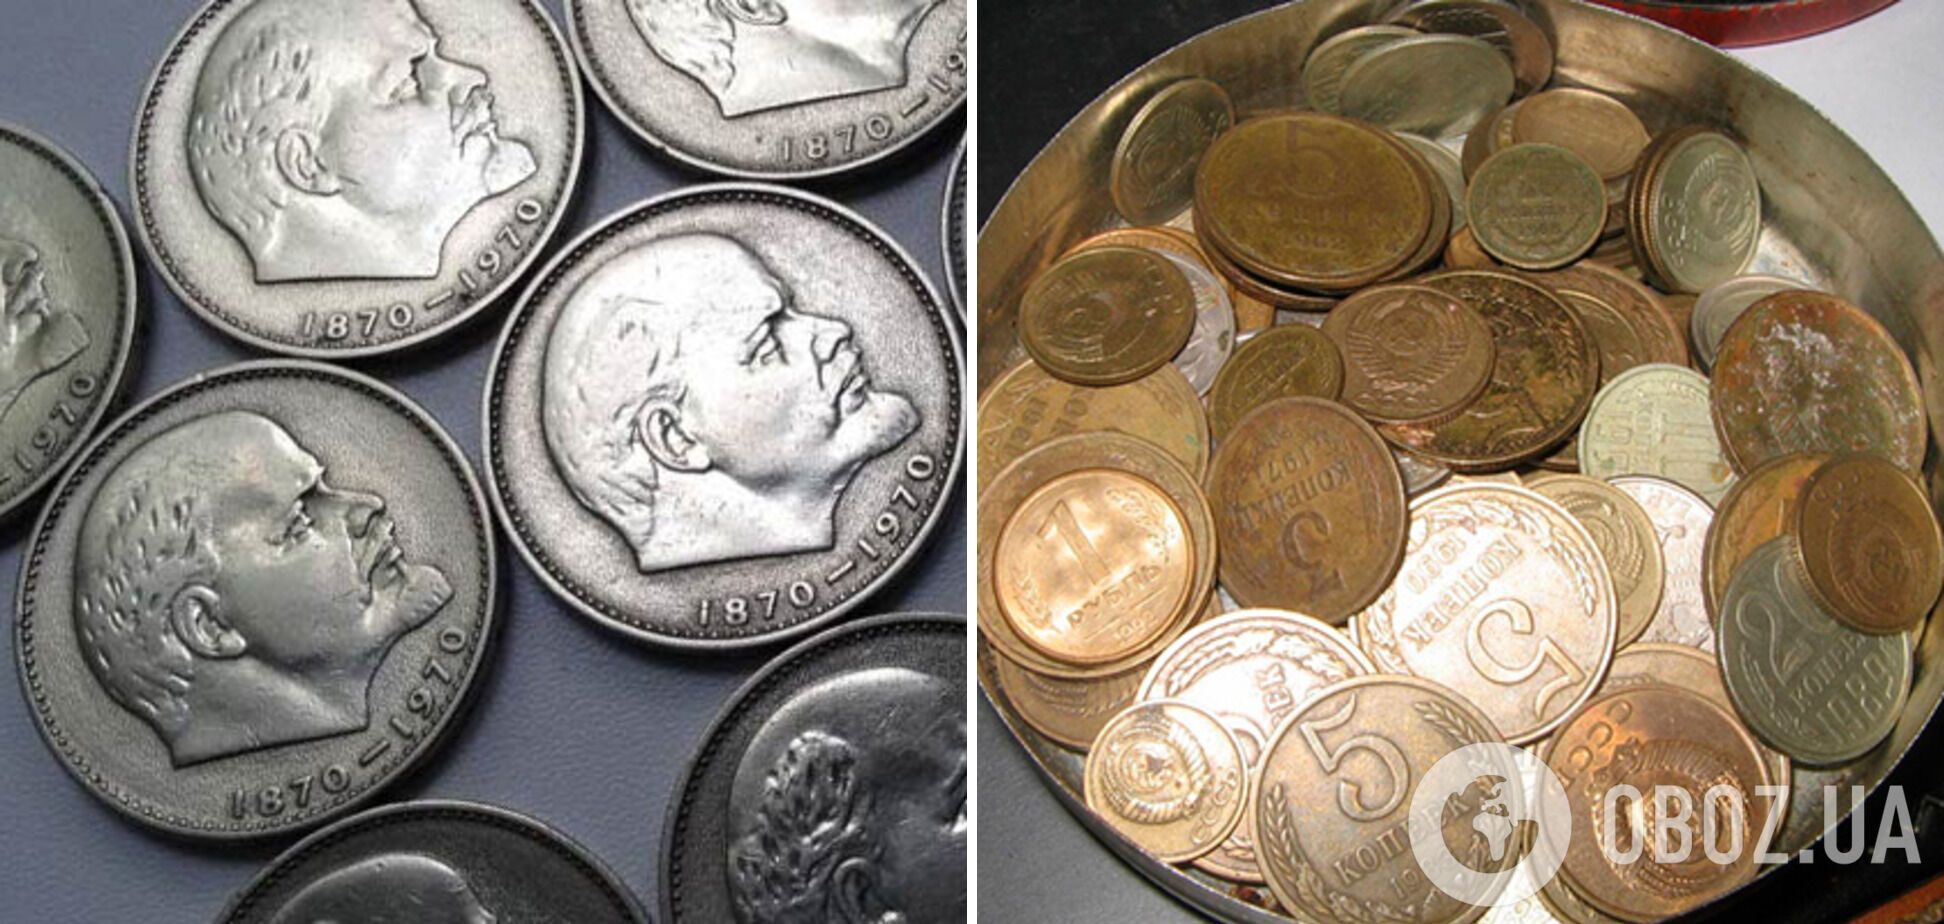 Была легенда, что в монетах есть ценные металлы.